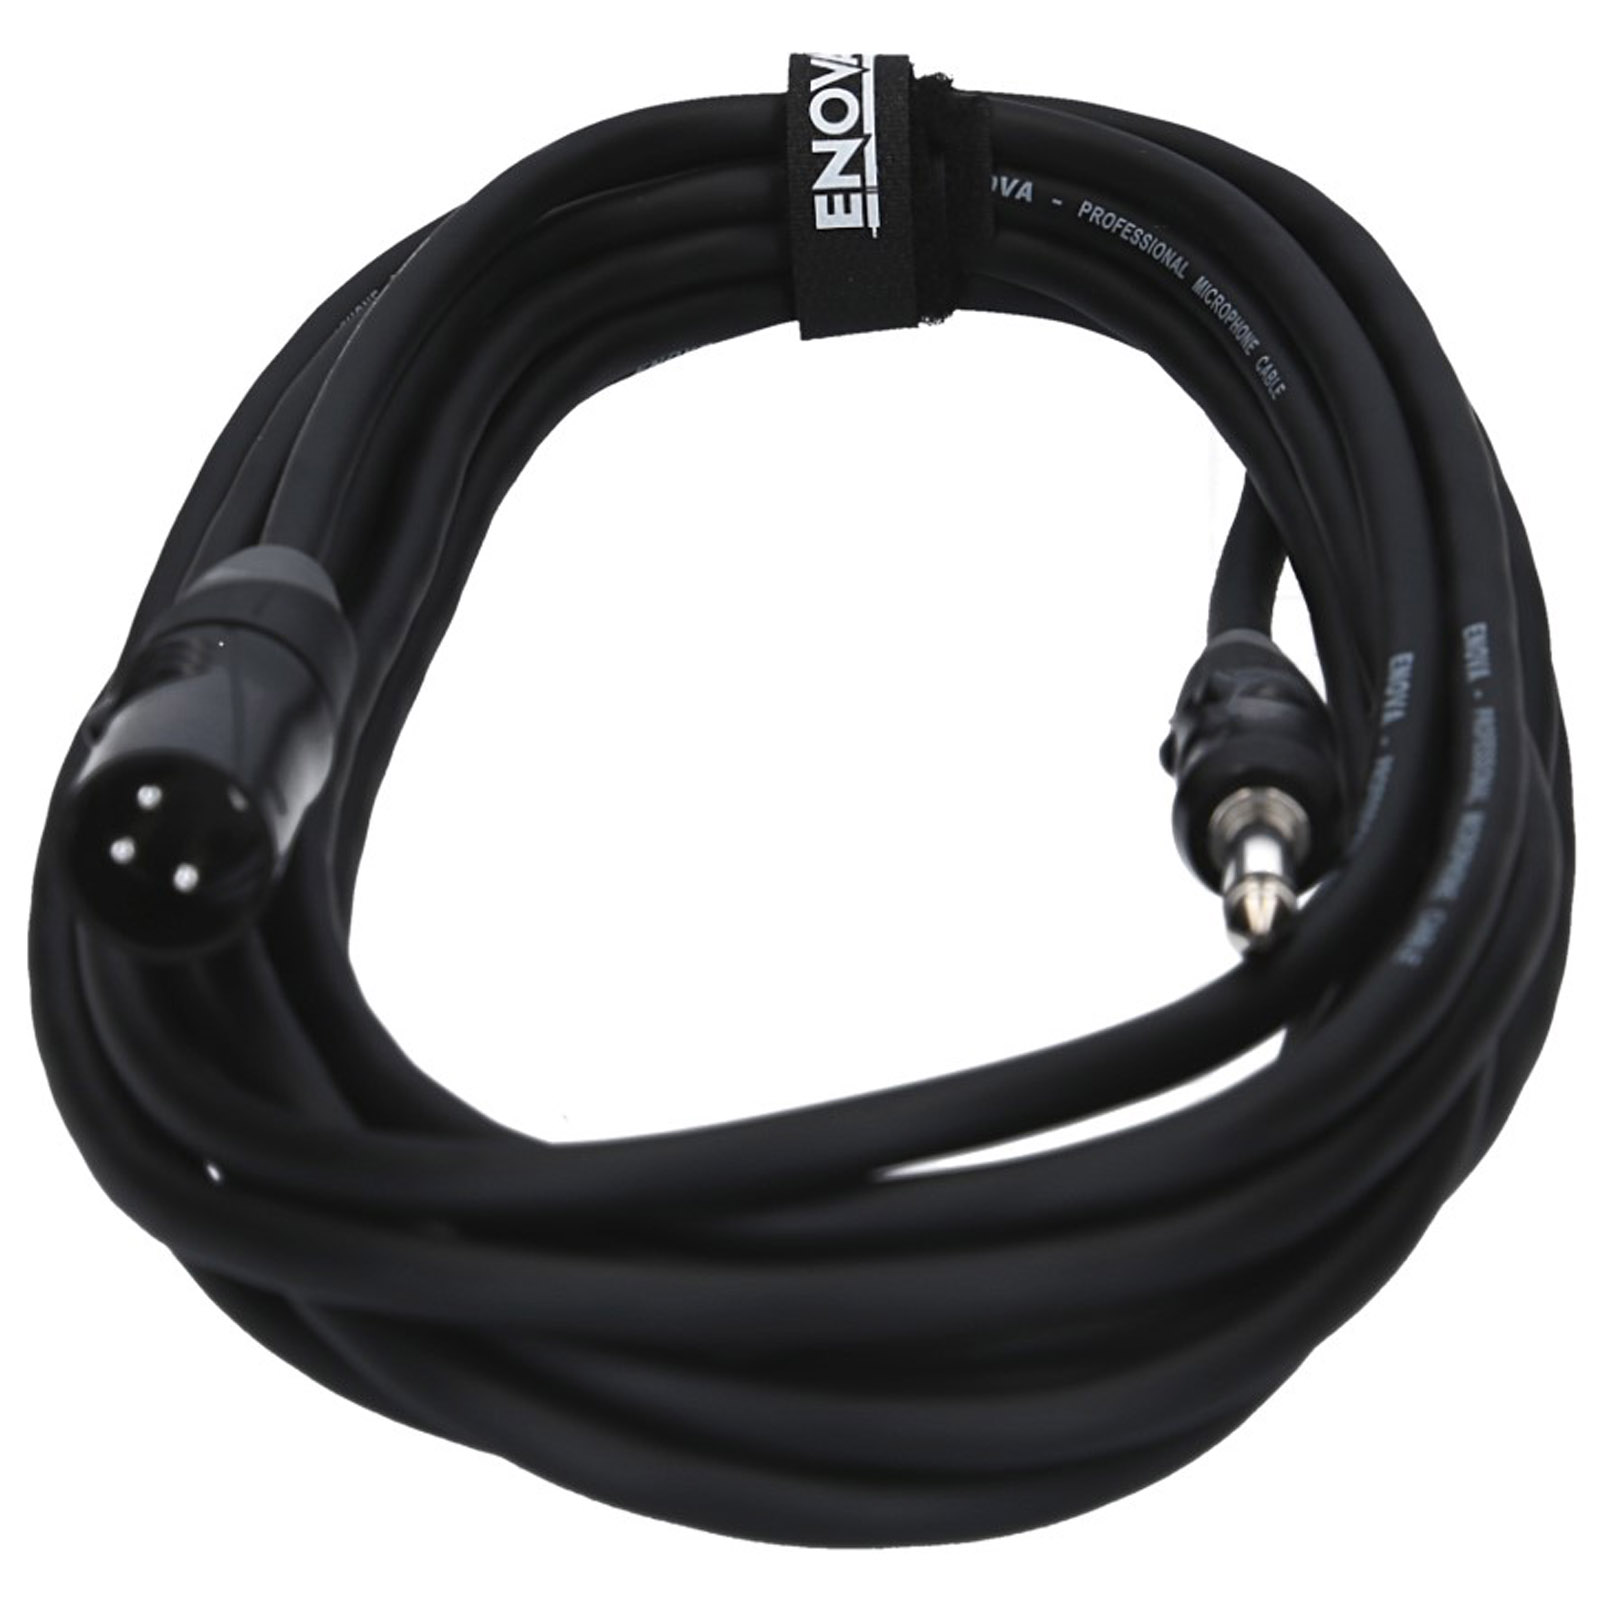 ENOVA Cable adaptador de jack de 3,5 mm a 2 x XLR macho Cable en Y estéreo  de 1 metro